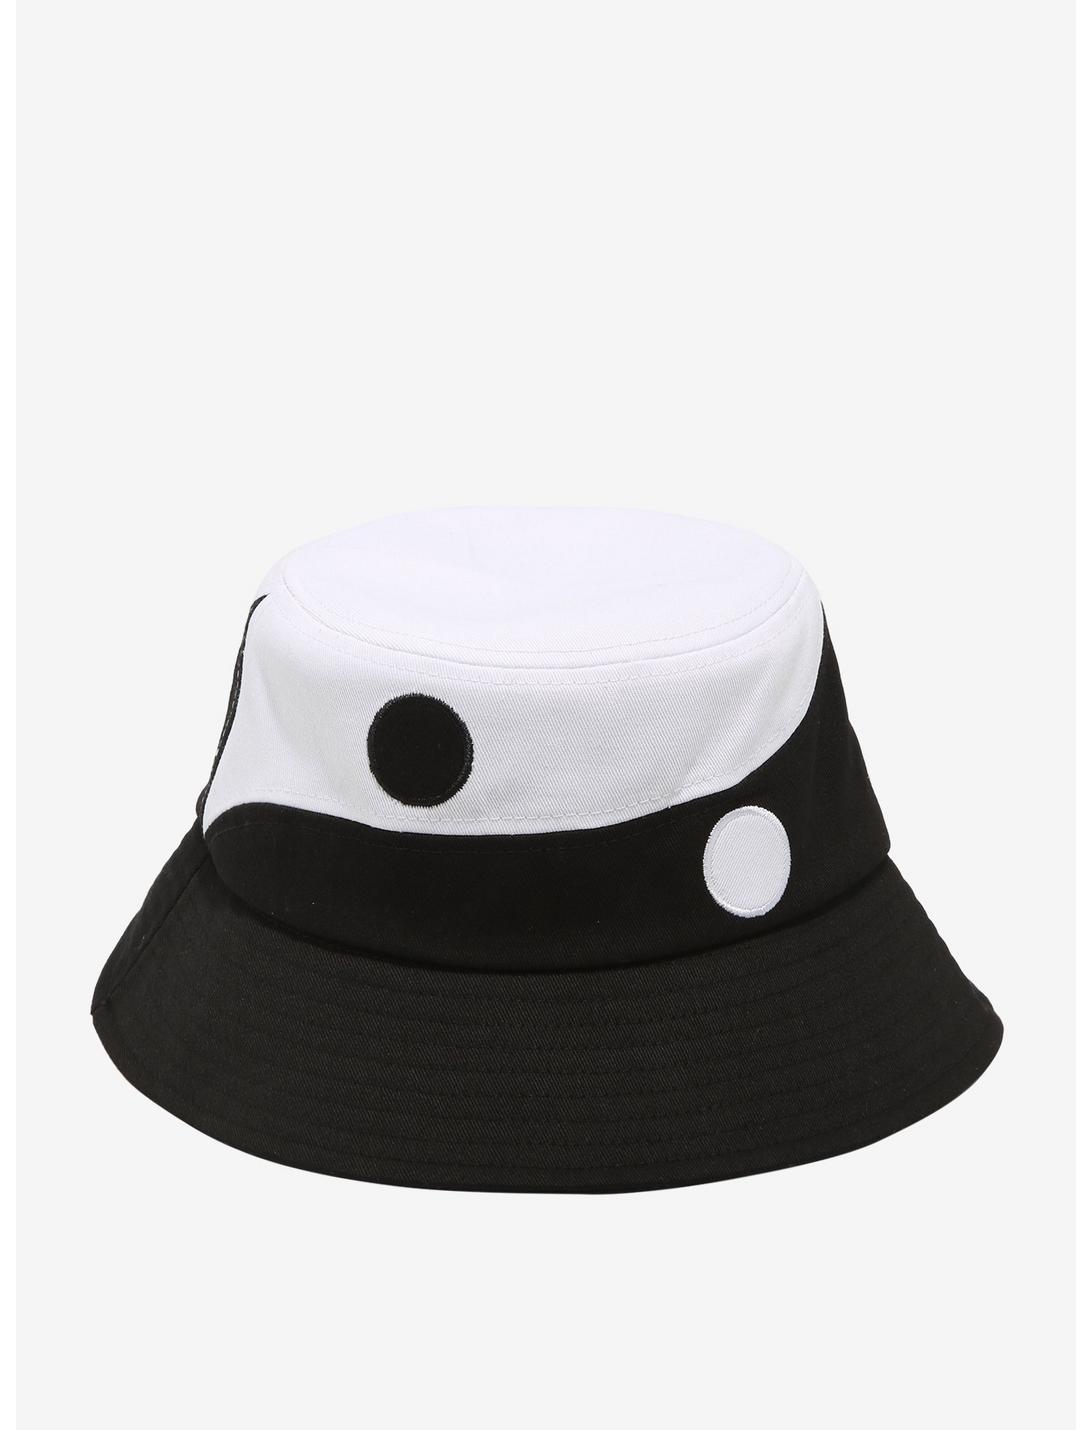 Yin-Yang Symbol Split Bucket Hat, , hi-res